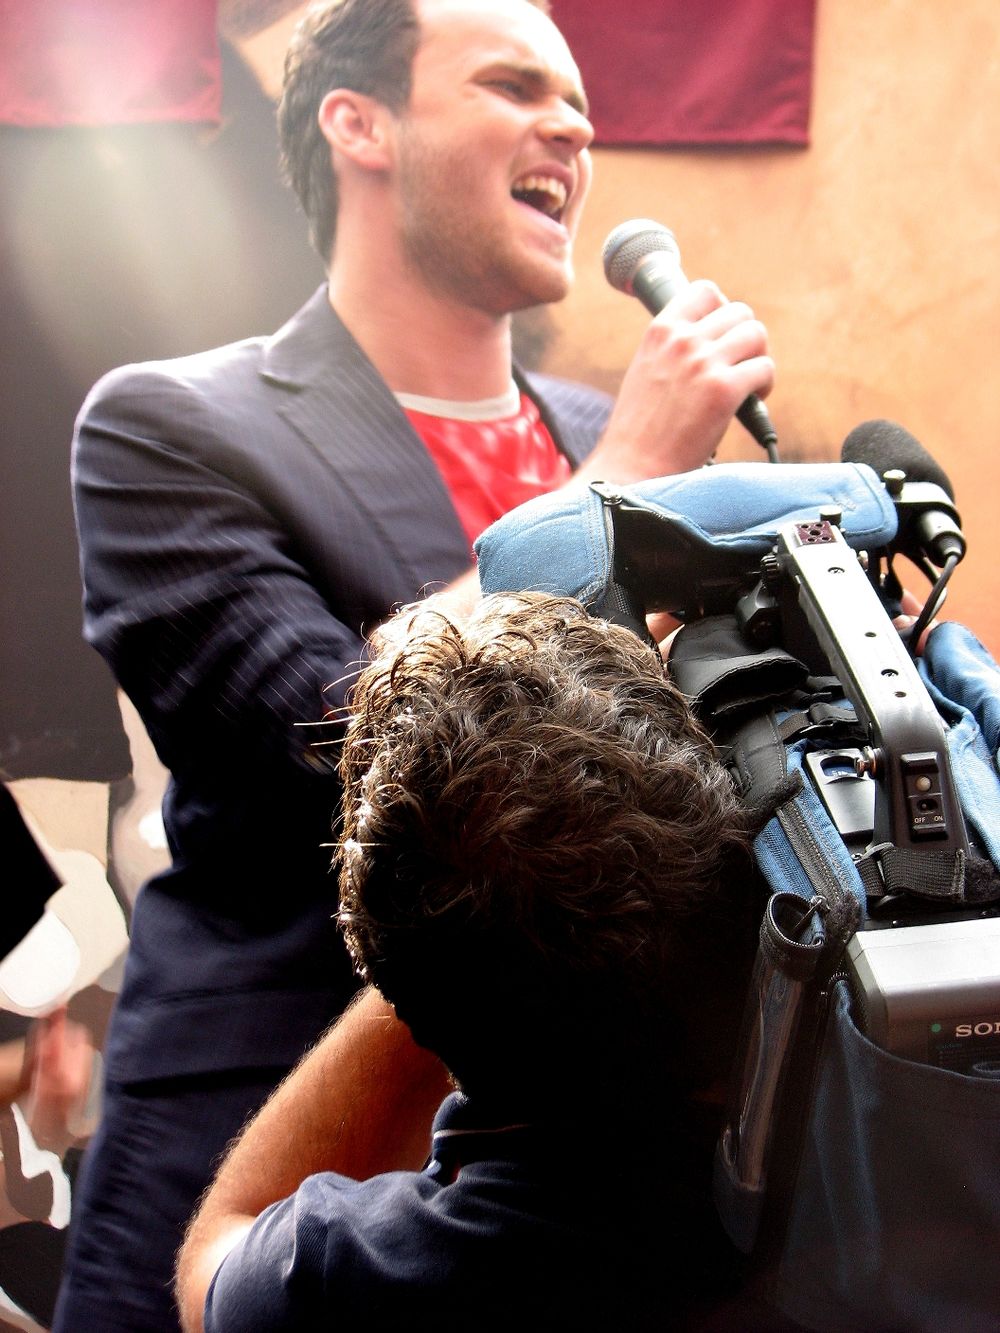 Mladi crnogorski pevač Danijel Alibabić snimio je prošlog vikenda video-klip za pesmu Ne plači mala s kojom je osvojio treće mesto na Radijskom fesivalu Srbije održanom u decembru 2008. godine u Vrnjačkoj Banji